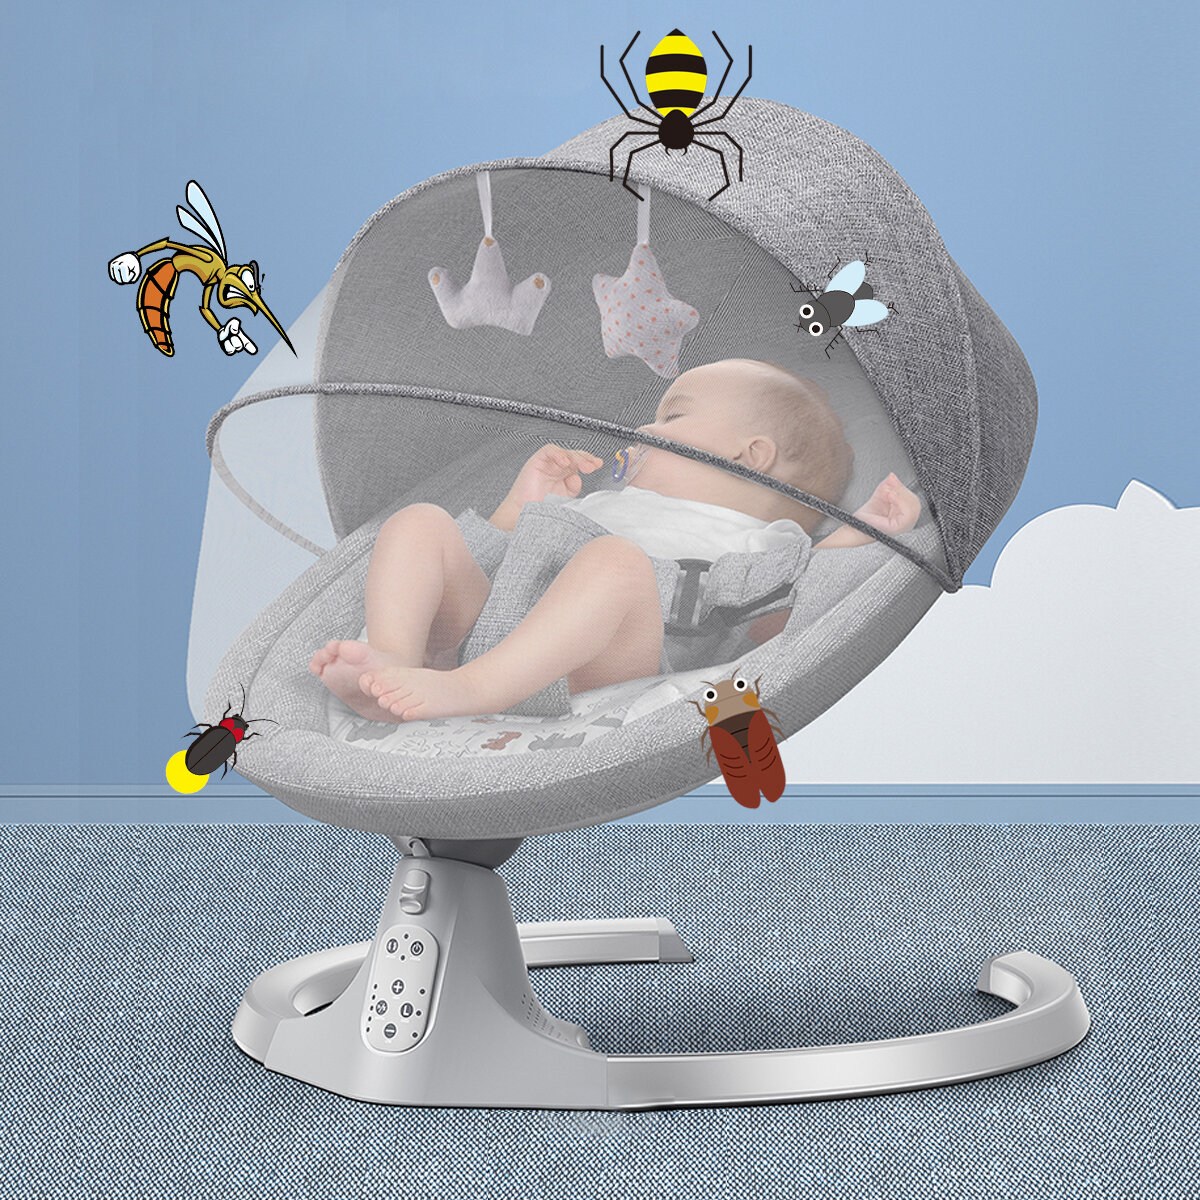 Wipstoeltje, elektrische babyschommel met muziek, bruikbaar vanaf de geboorte tot ca. 9 maanden, 0-1